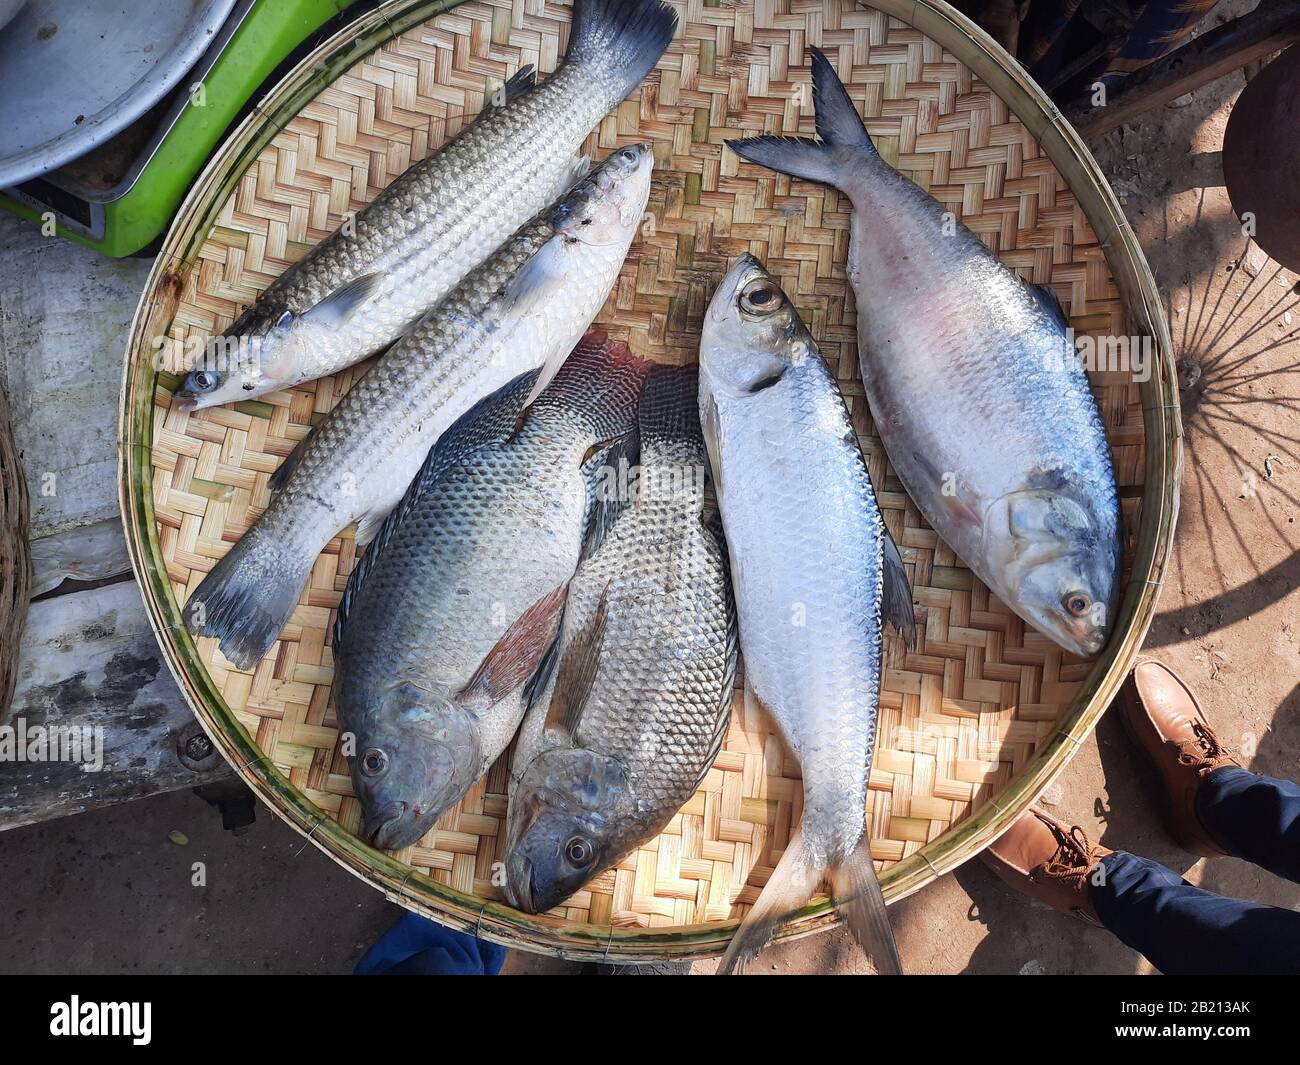 Exotische lokale Fische aus Bangladesch werden in einem runden Topf aufbewahrt, um sie an den Verbraucher in Stakhira, Bangladesch, zu verkaufen. Dieser Fisch ist sehr lecker und hat viel Abgeschmeckt. Stockfoto